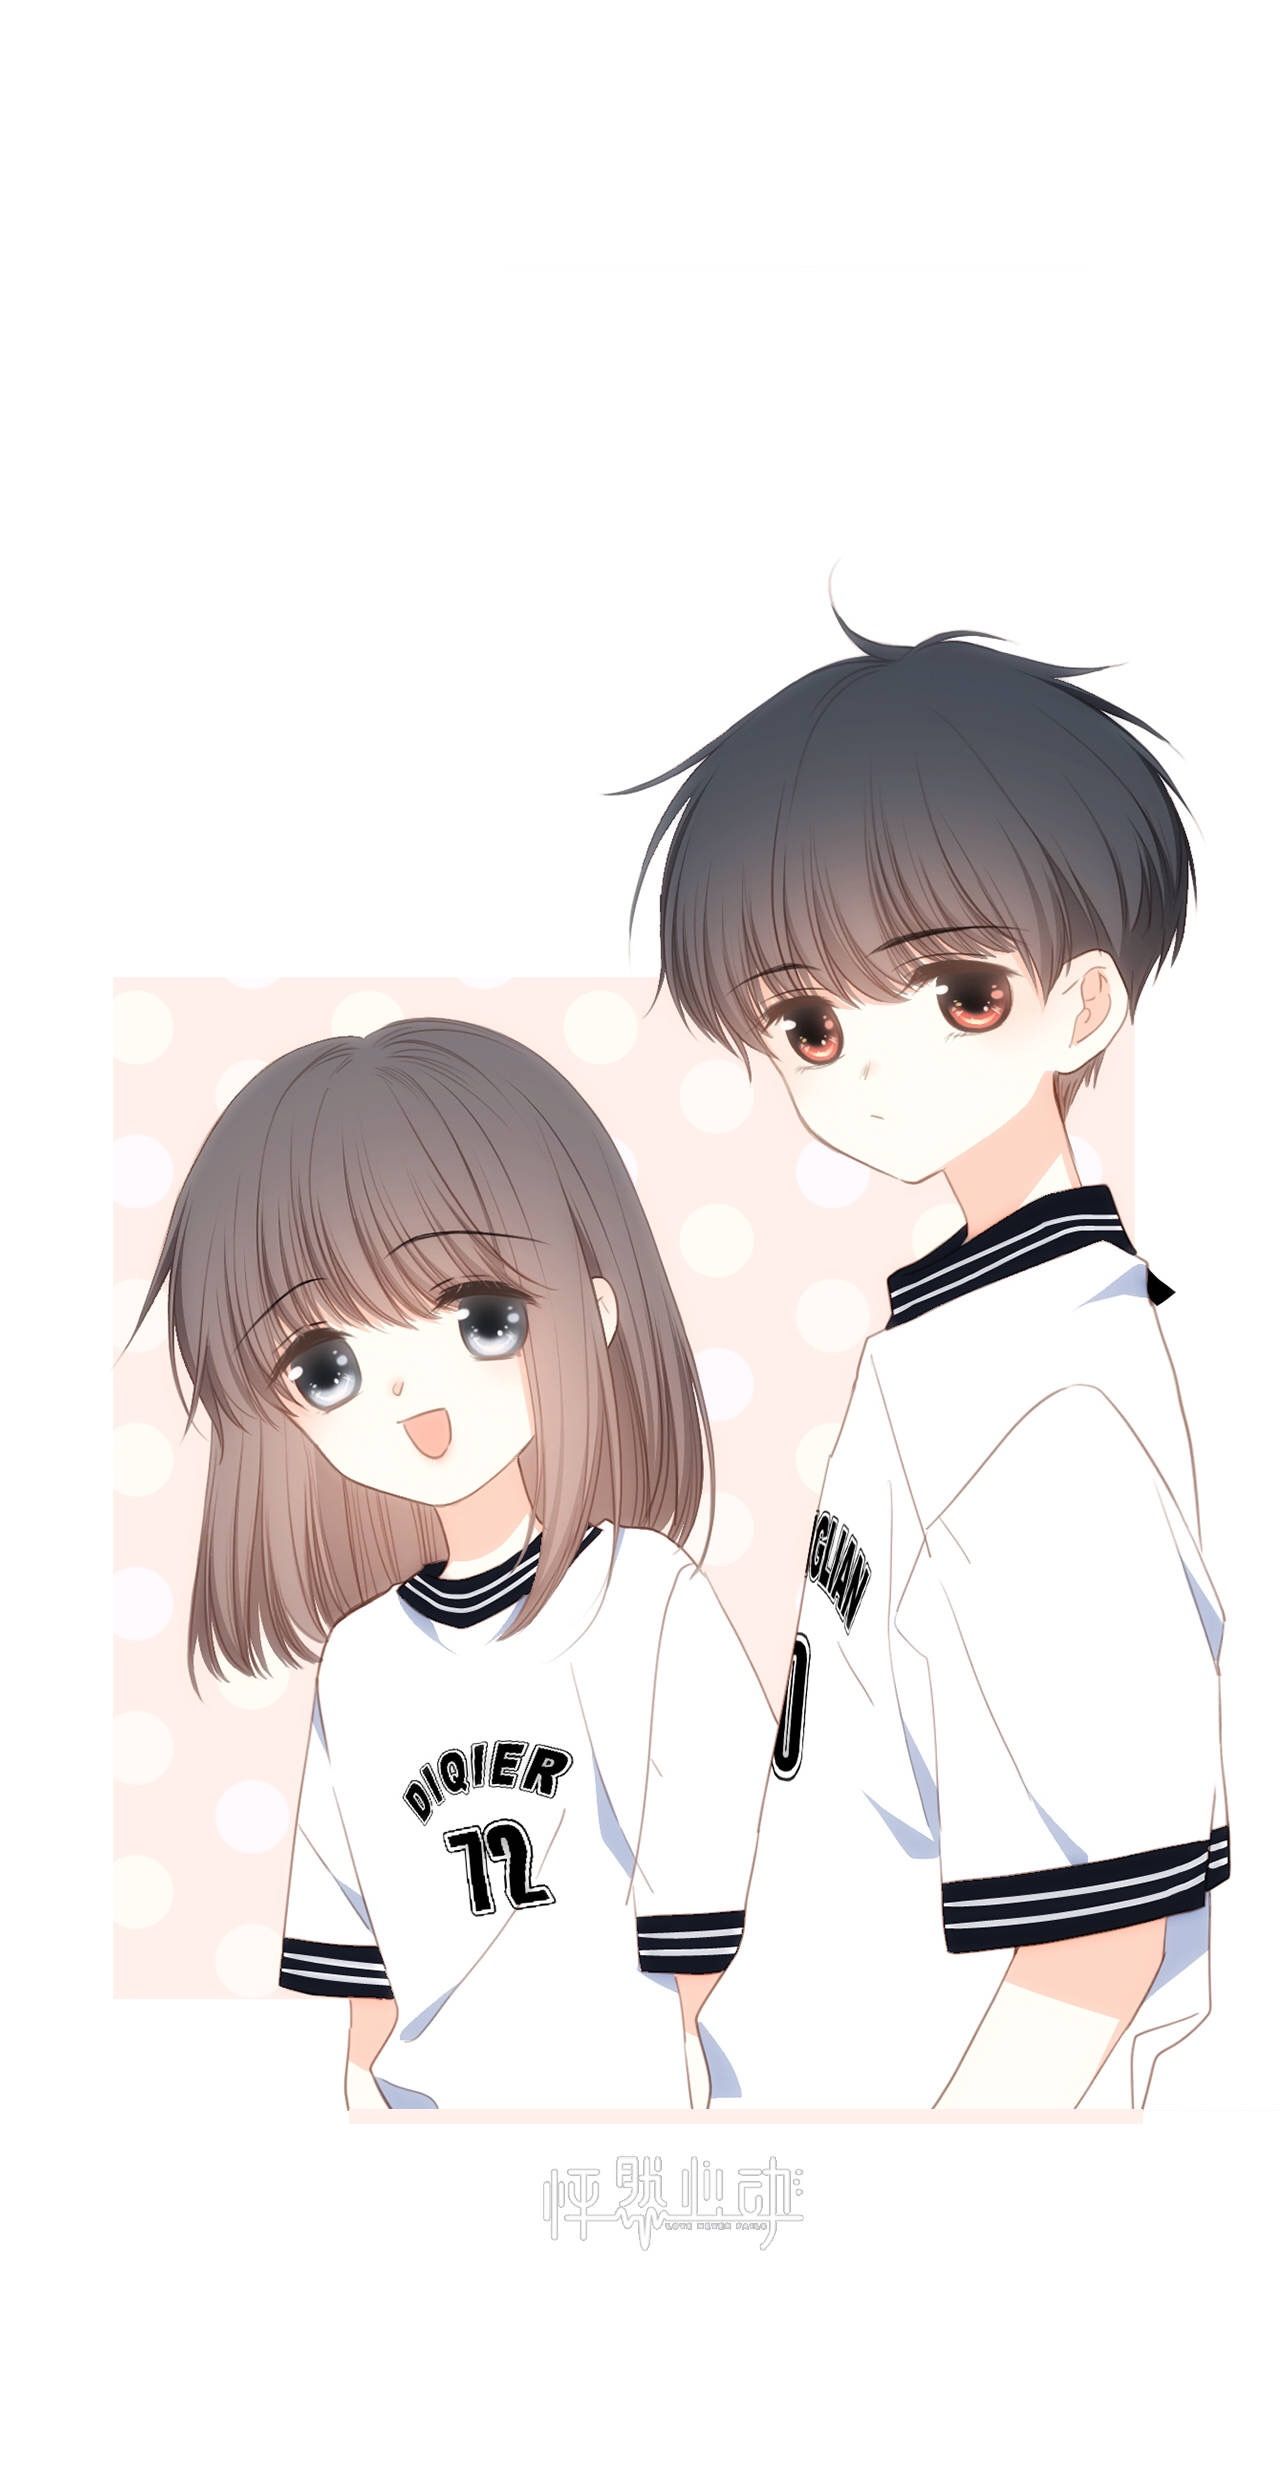 Ảnh đôi yêu nhau Anime đẹp 2024:
Ảnh đôi yêu nhau Anime đẹp năm 2024 sẽ làm say đắm trái tim của bạn. Với những bức ảnh tình cảm, cặp đôi Anime sẽ khiến bạn thấy một tình yêu đích thực, mang lại cảm giác quý giá và ấm áp.